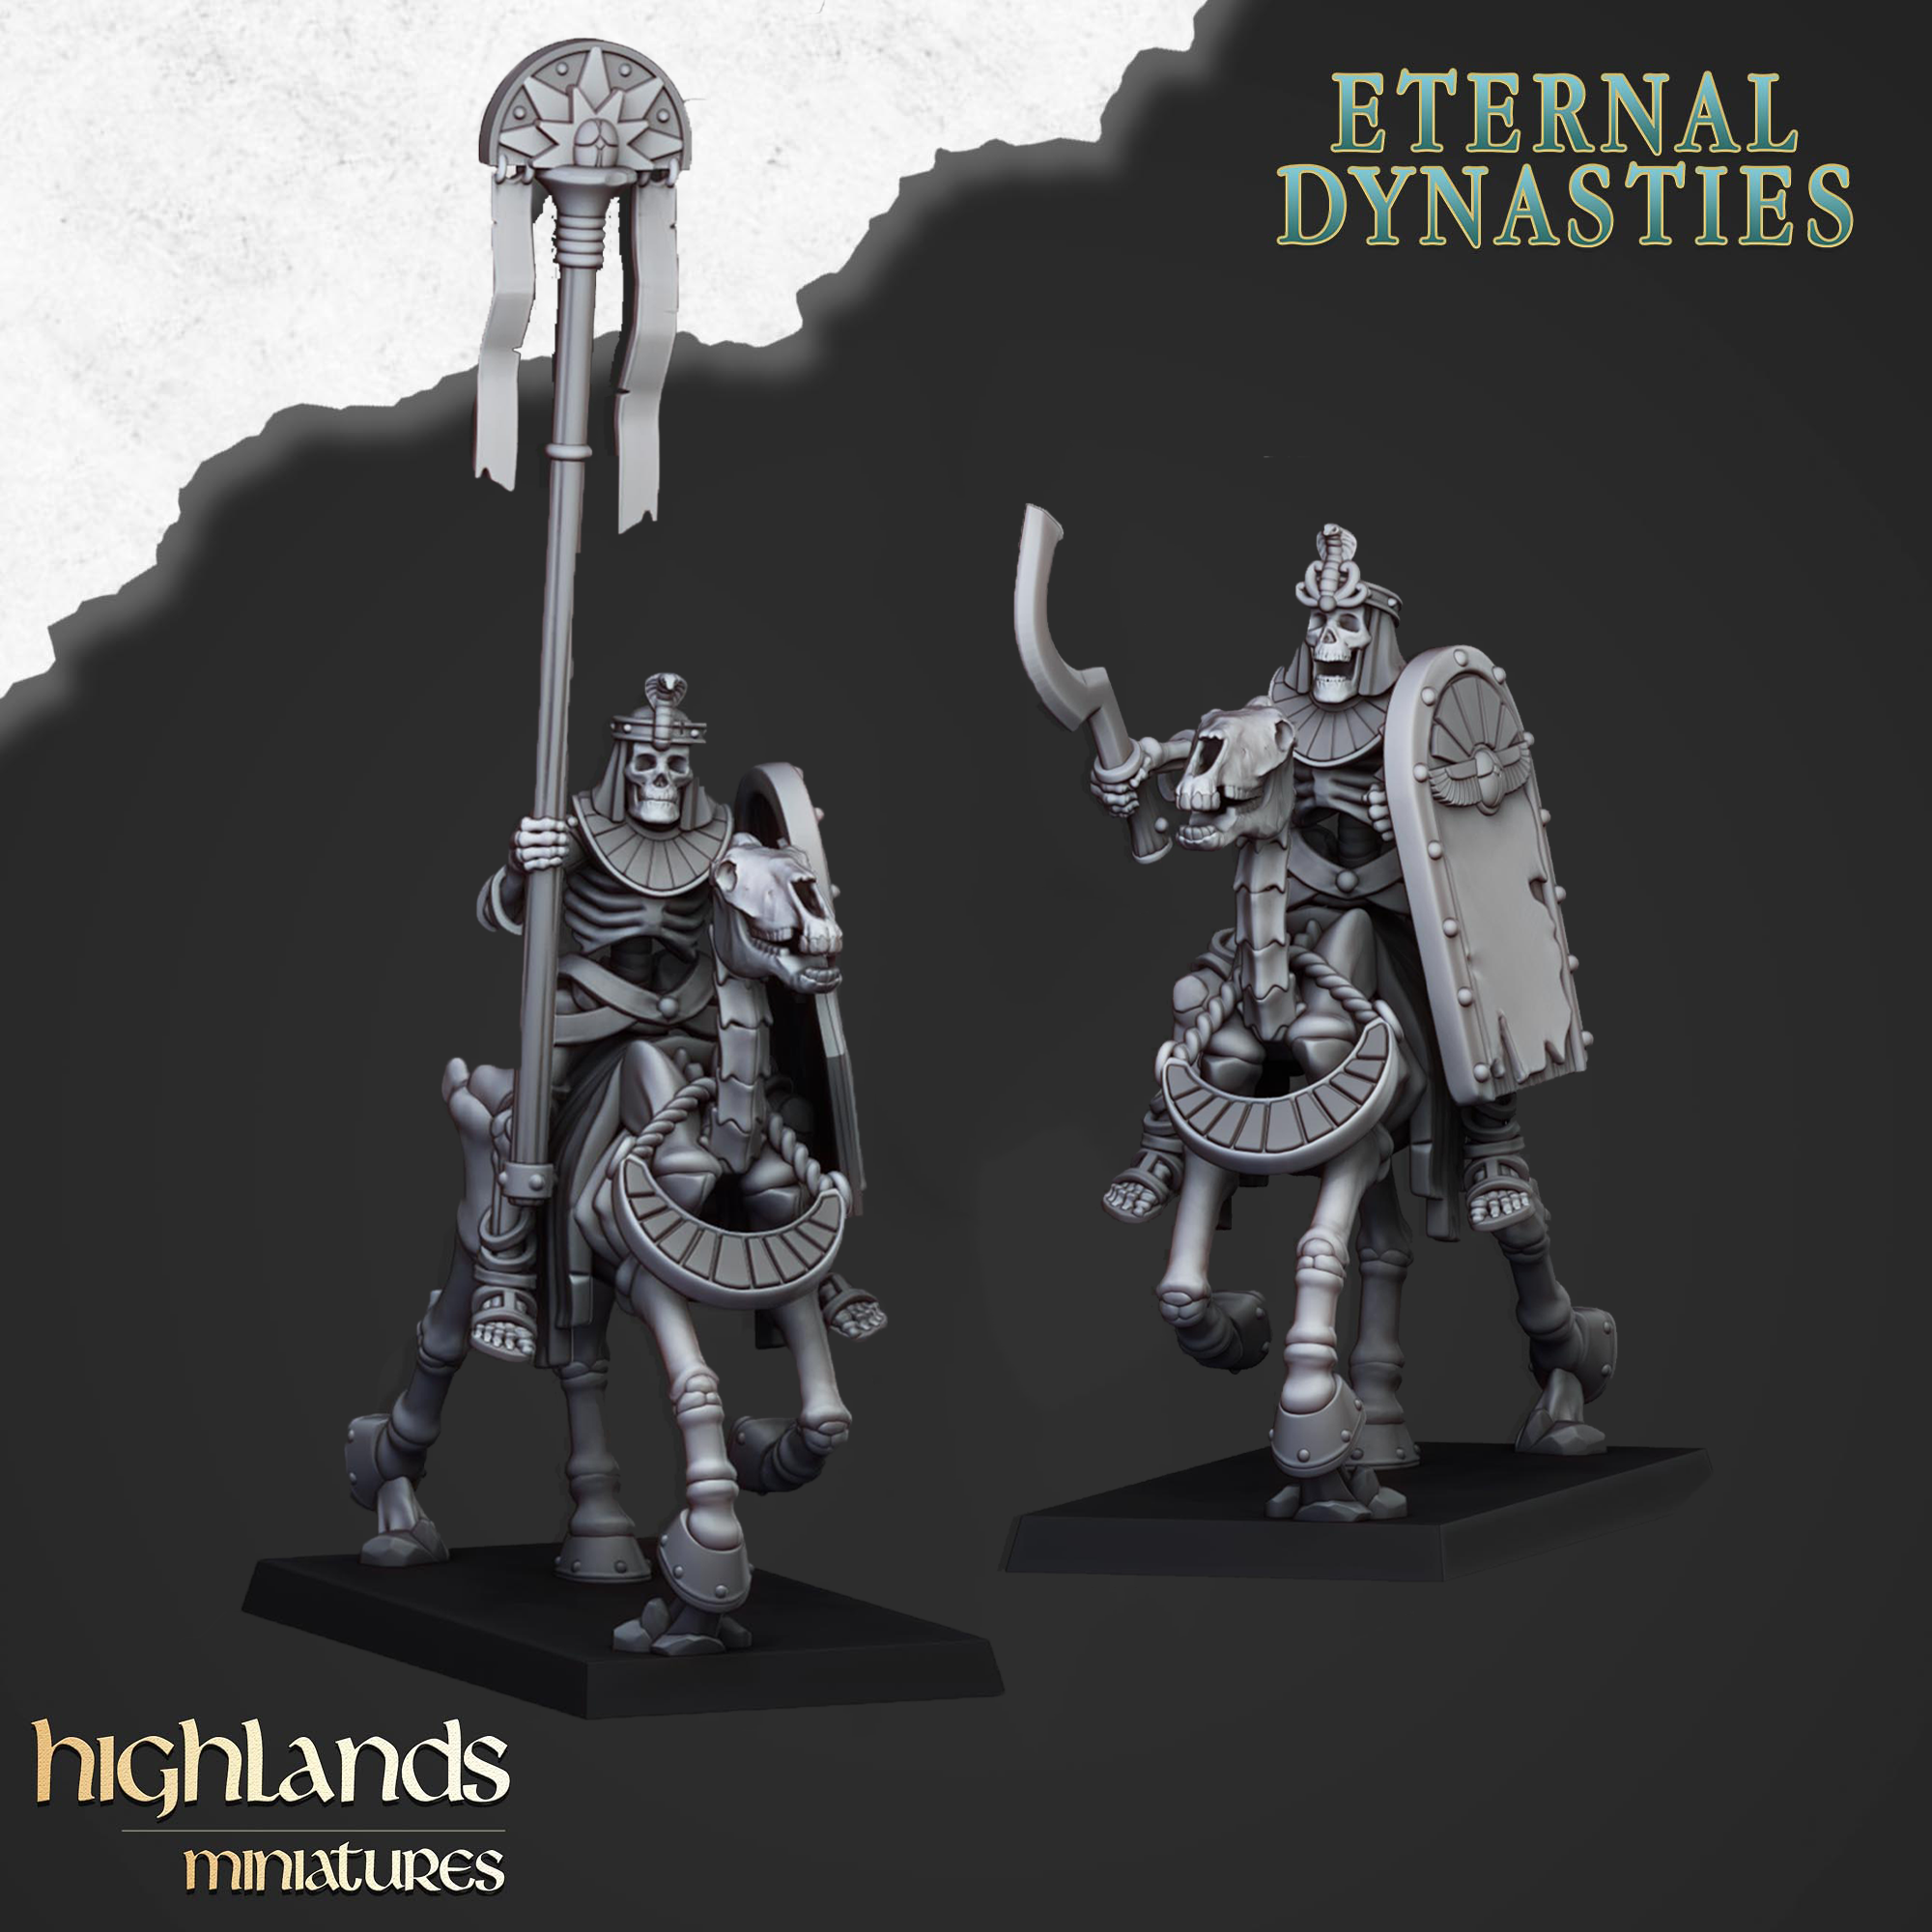 Capitanes de caballería esqueléticos antiguos (x2) - Dinastías eternas | Miniaturas de las Tierras Altas